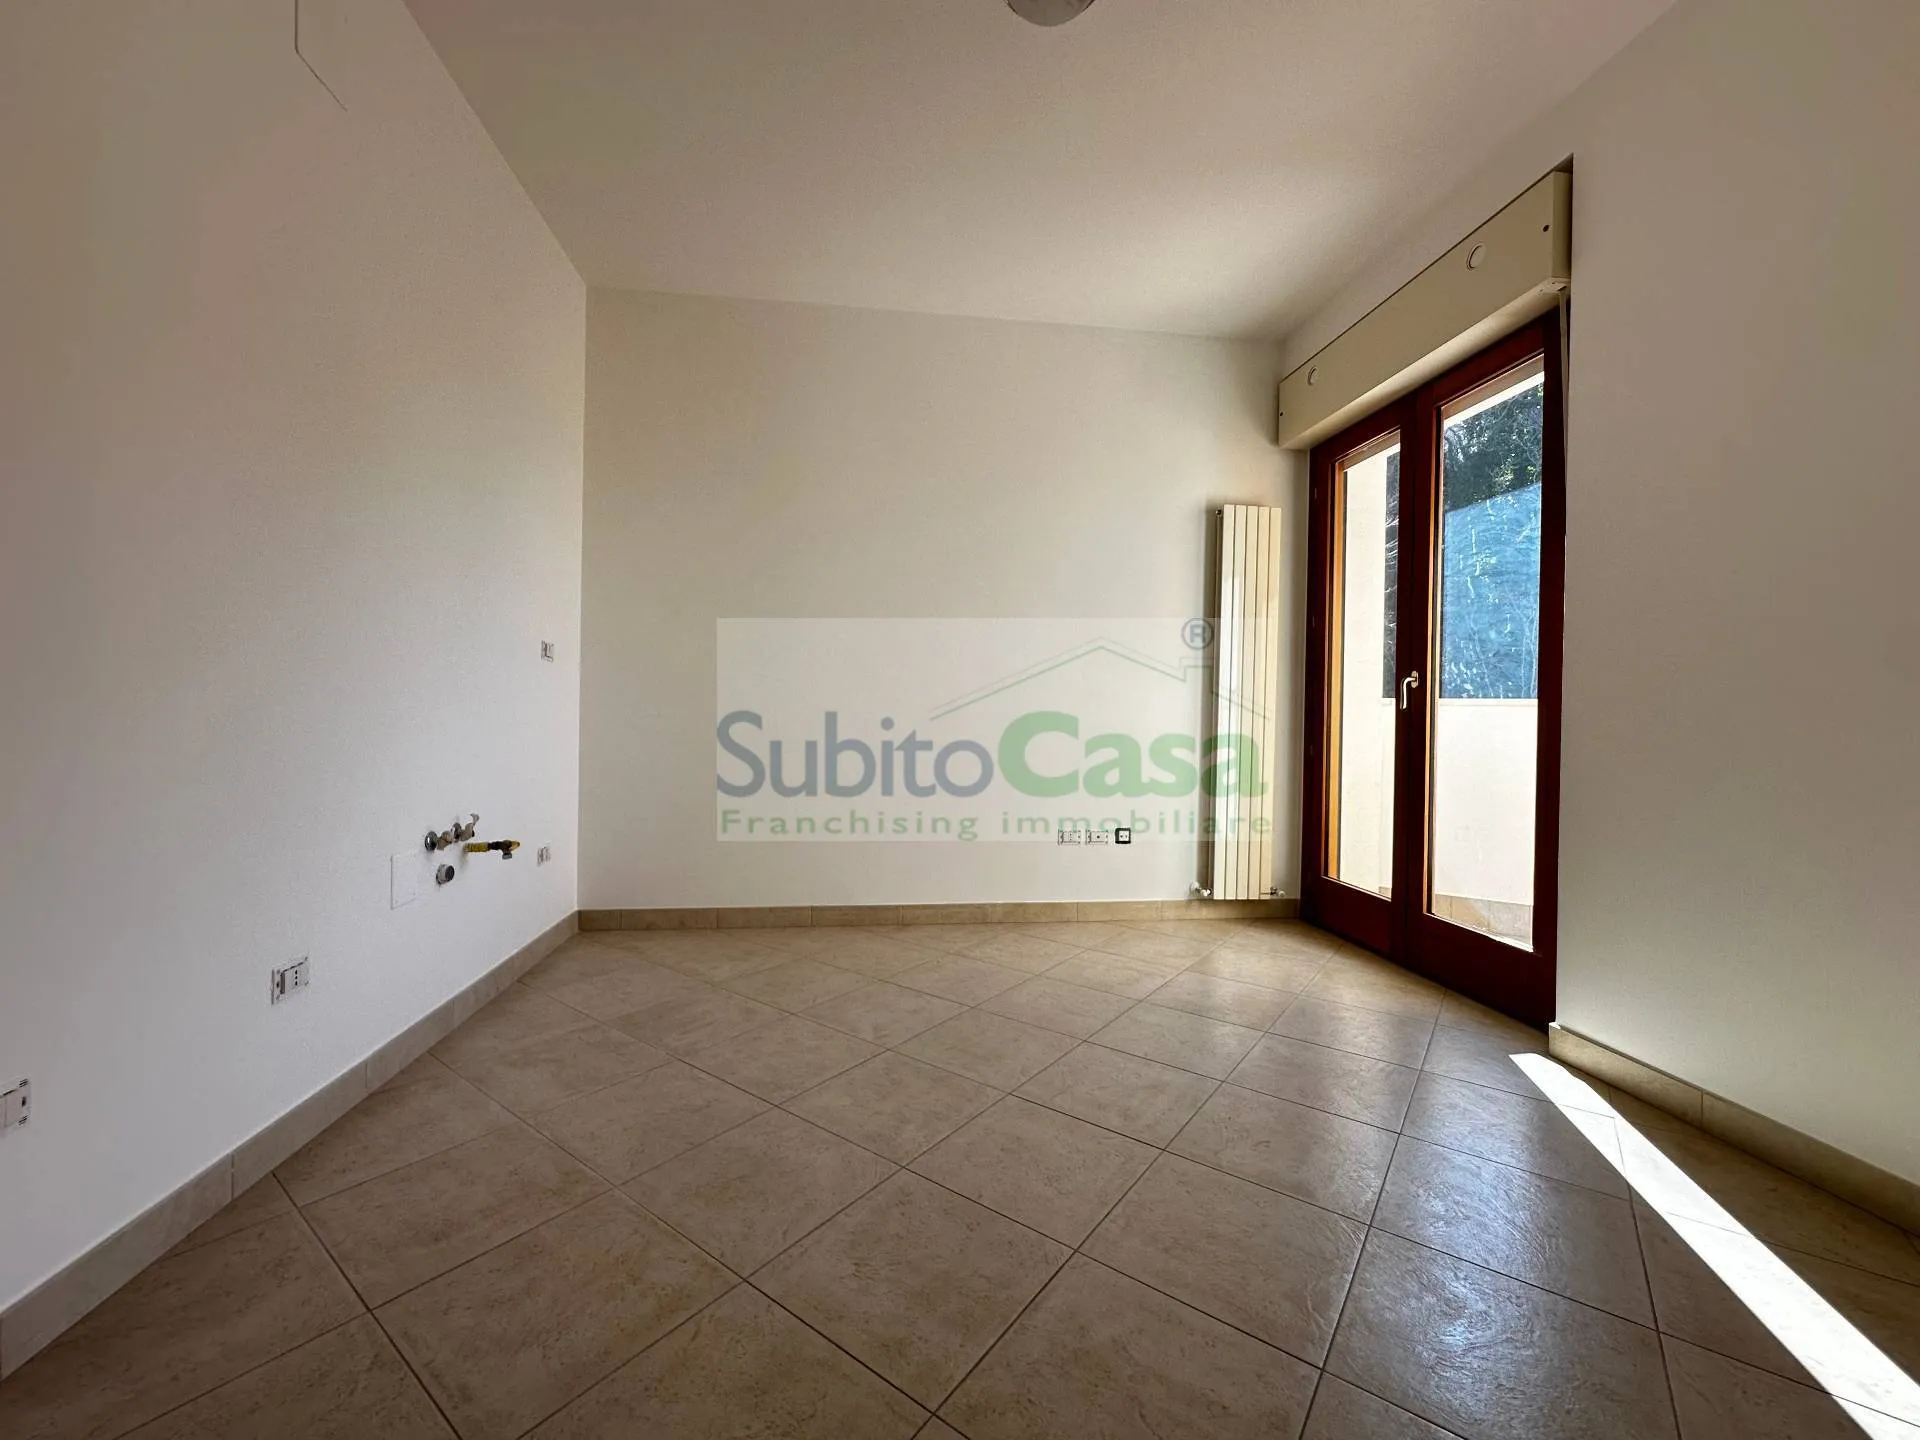 Immagine per Appartamento in vendita a Chieti Via Gran Sasso